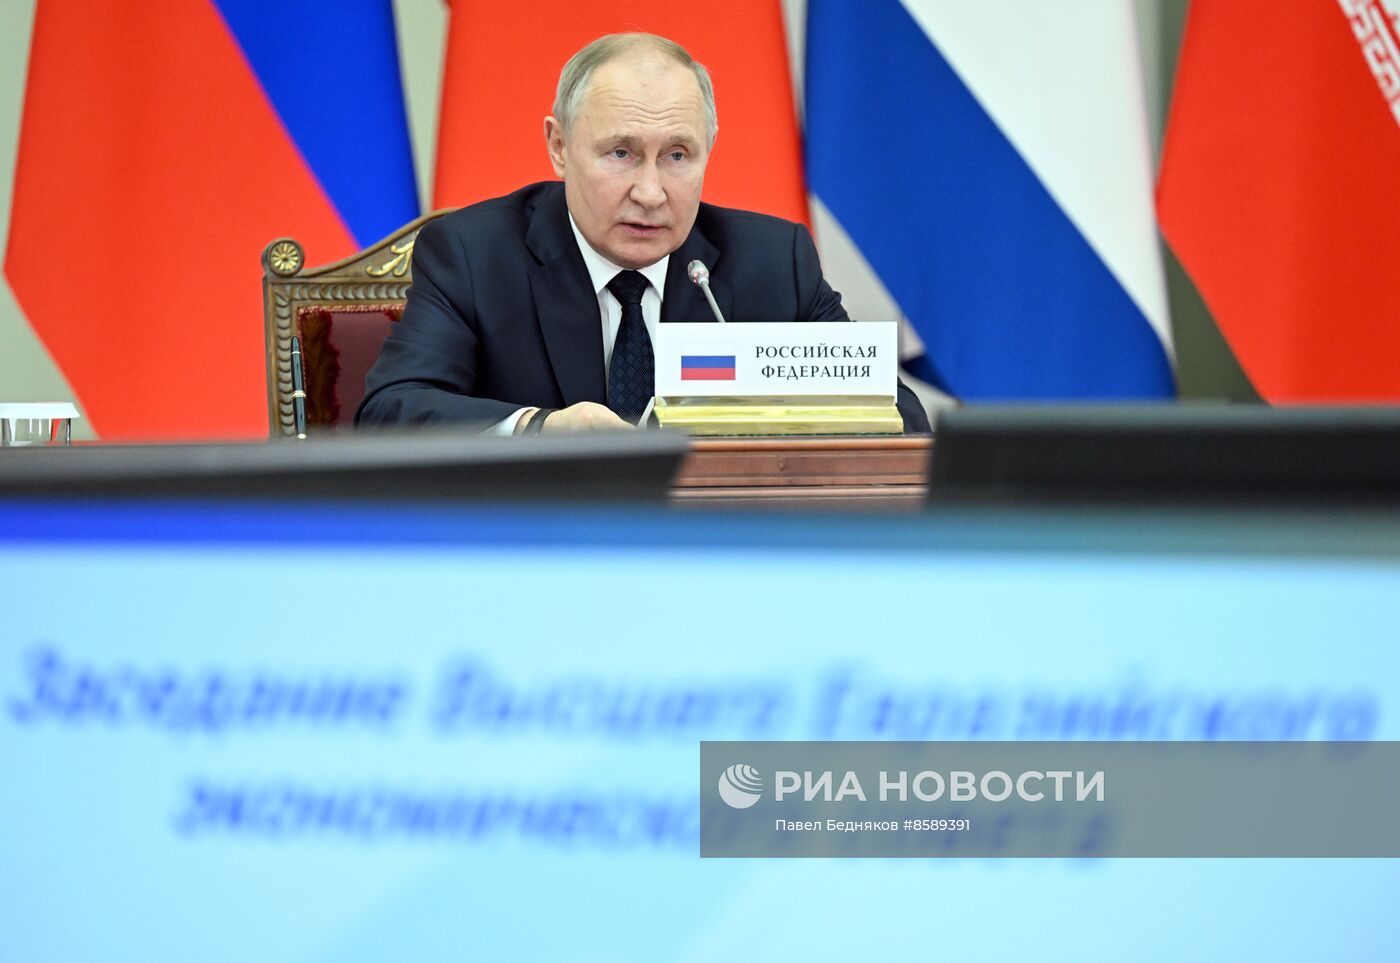 Президент РФ В. Путин принял участие в заседании Высшего Евразийского экономического совета